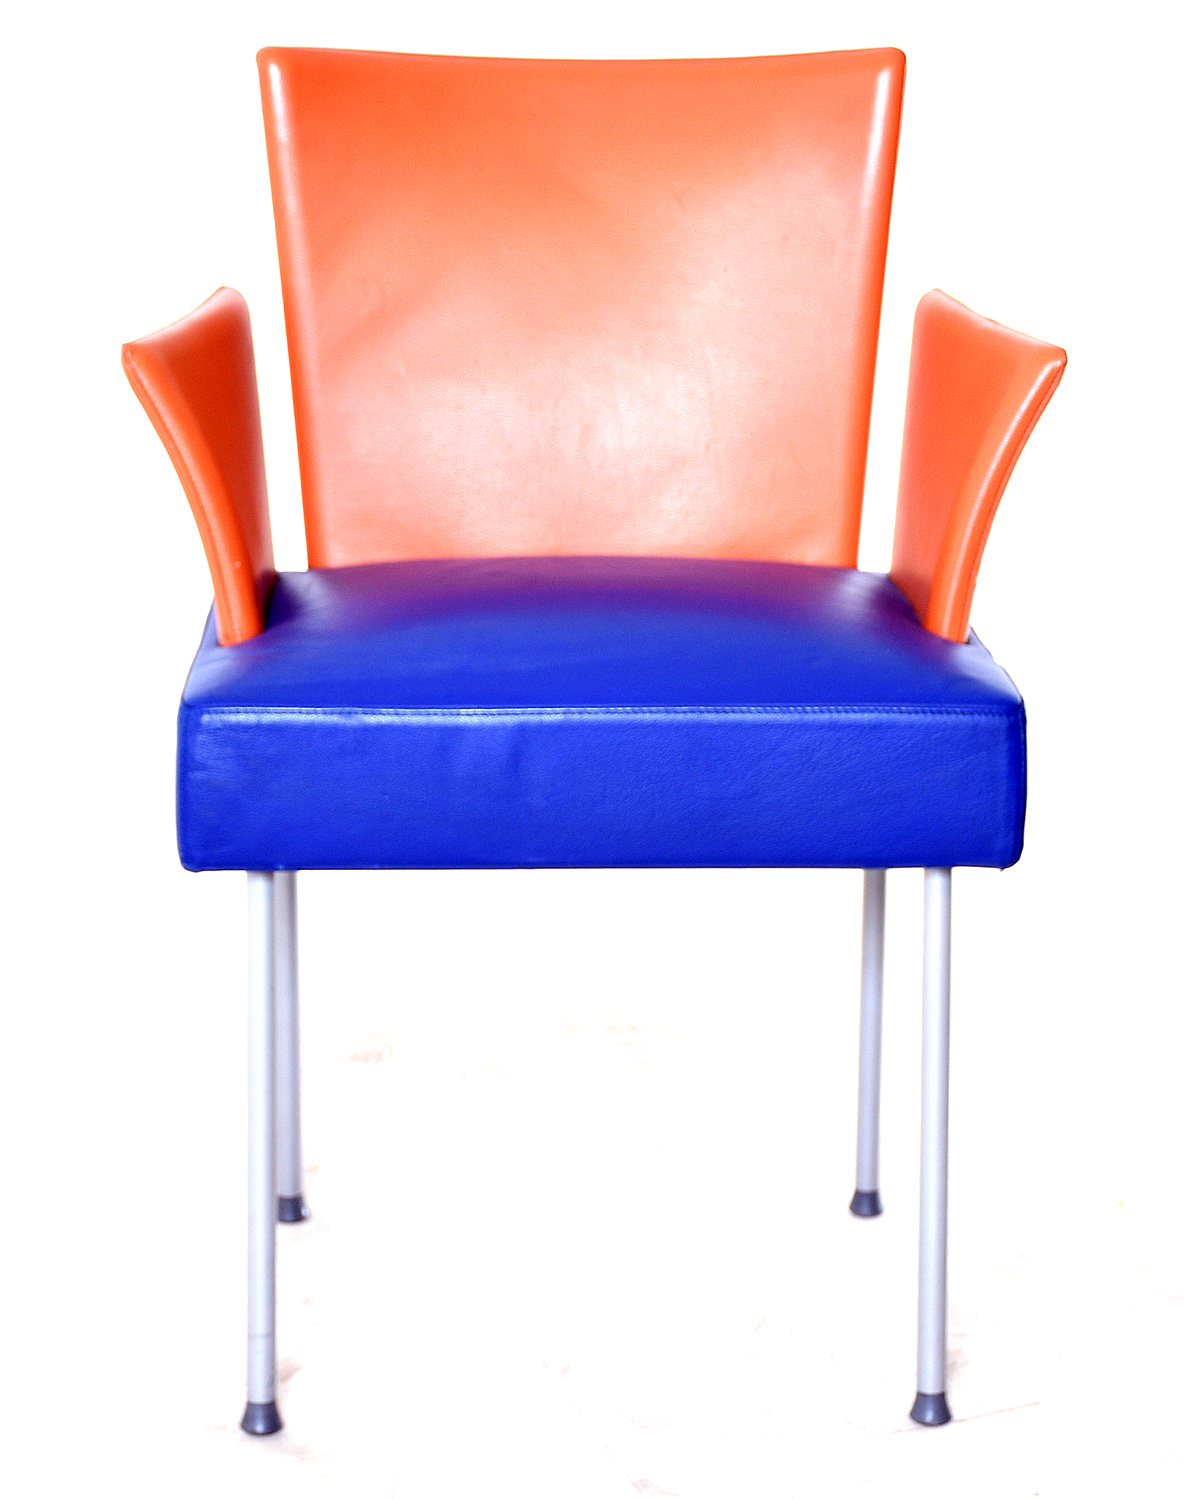 MONTIS Leder-Sessel, 35601, gebrauchte Büromöbel